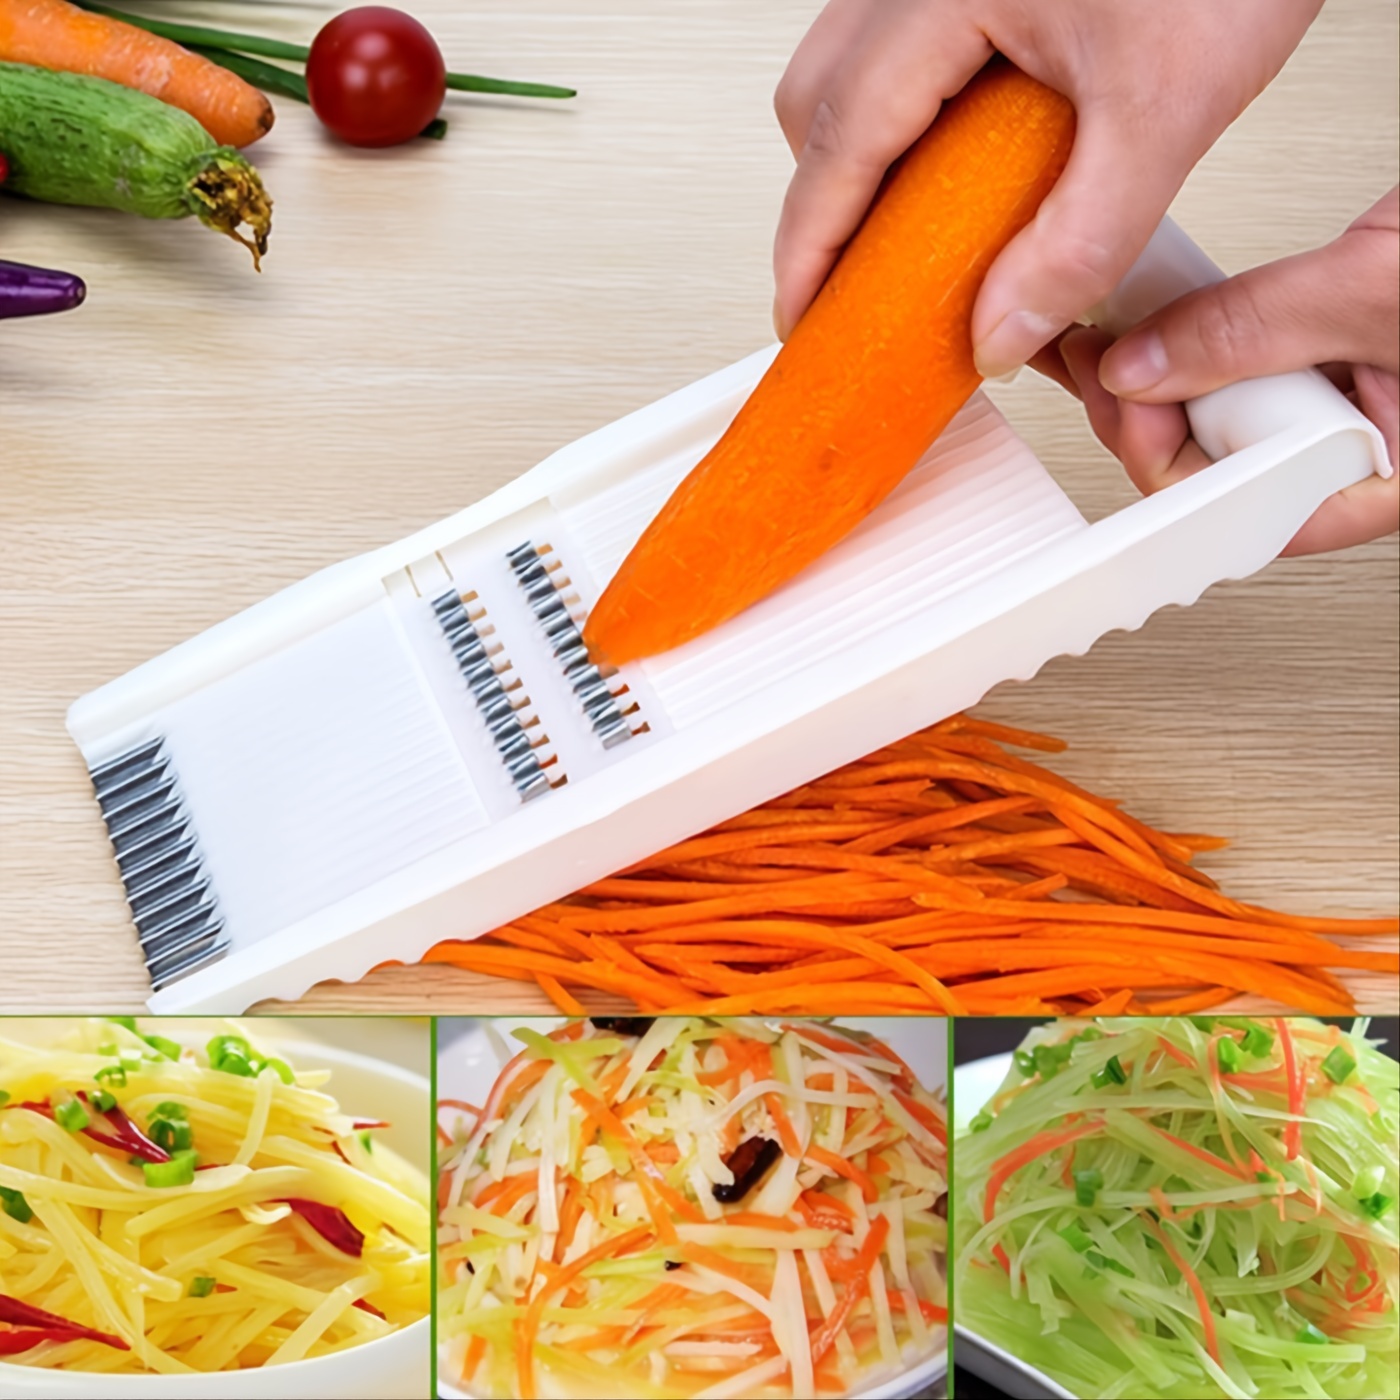 Grattugia per grattugiare e carote sminuzzate su un tagliere.